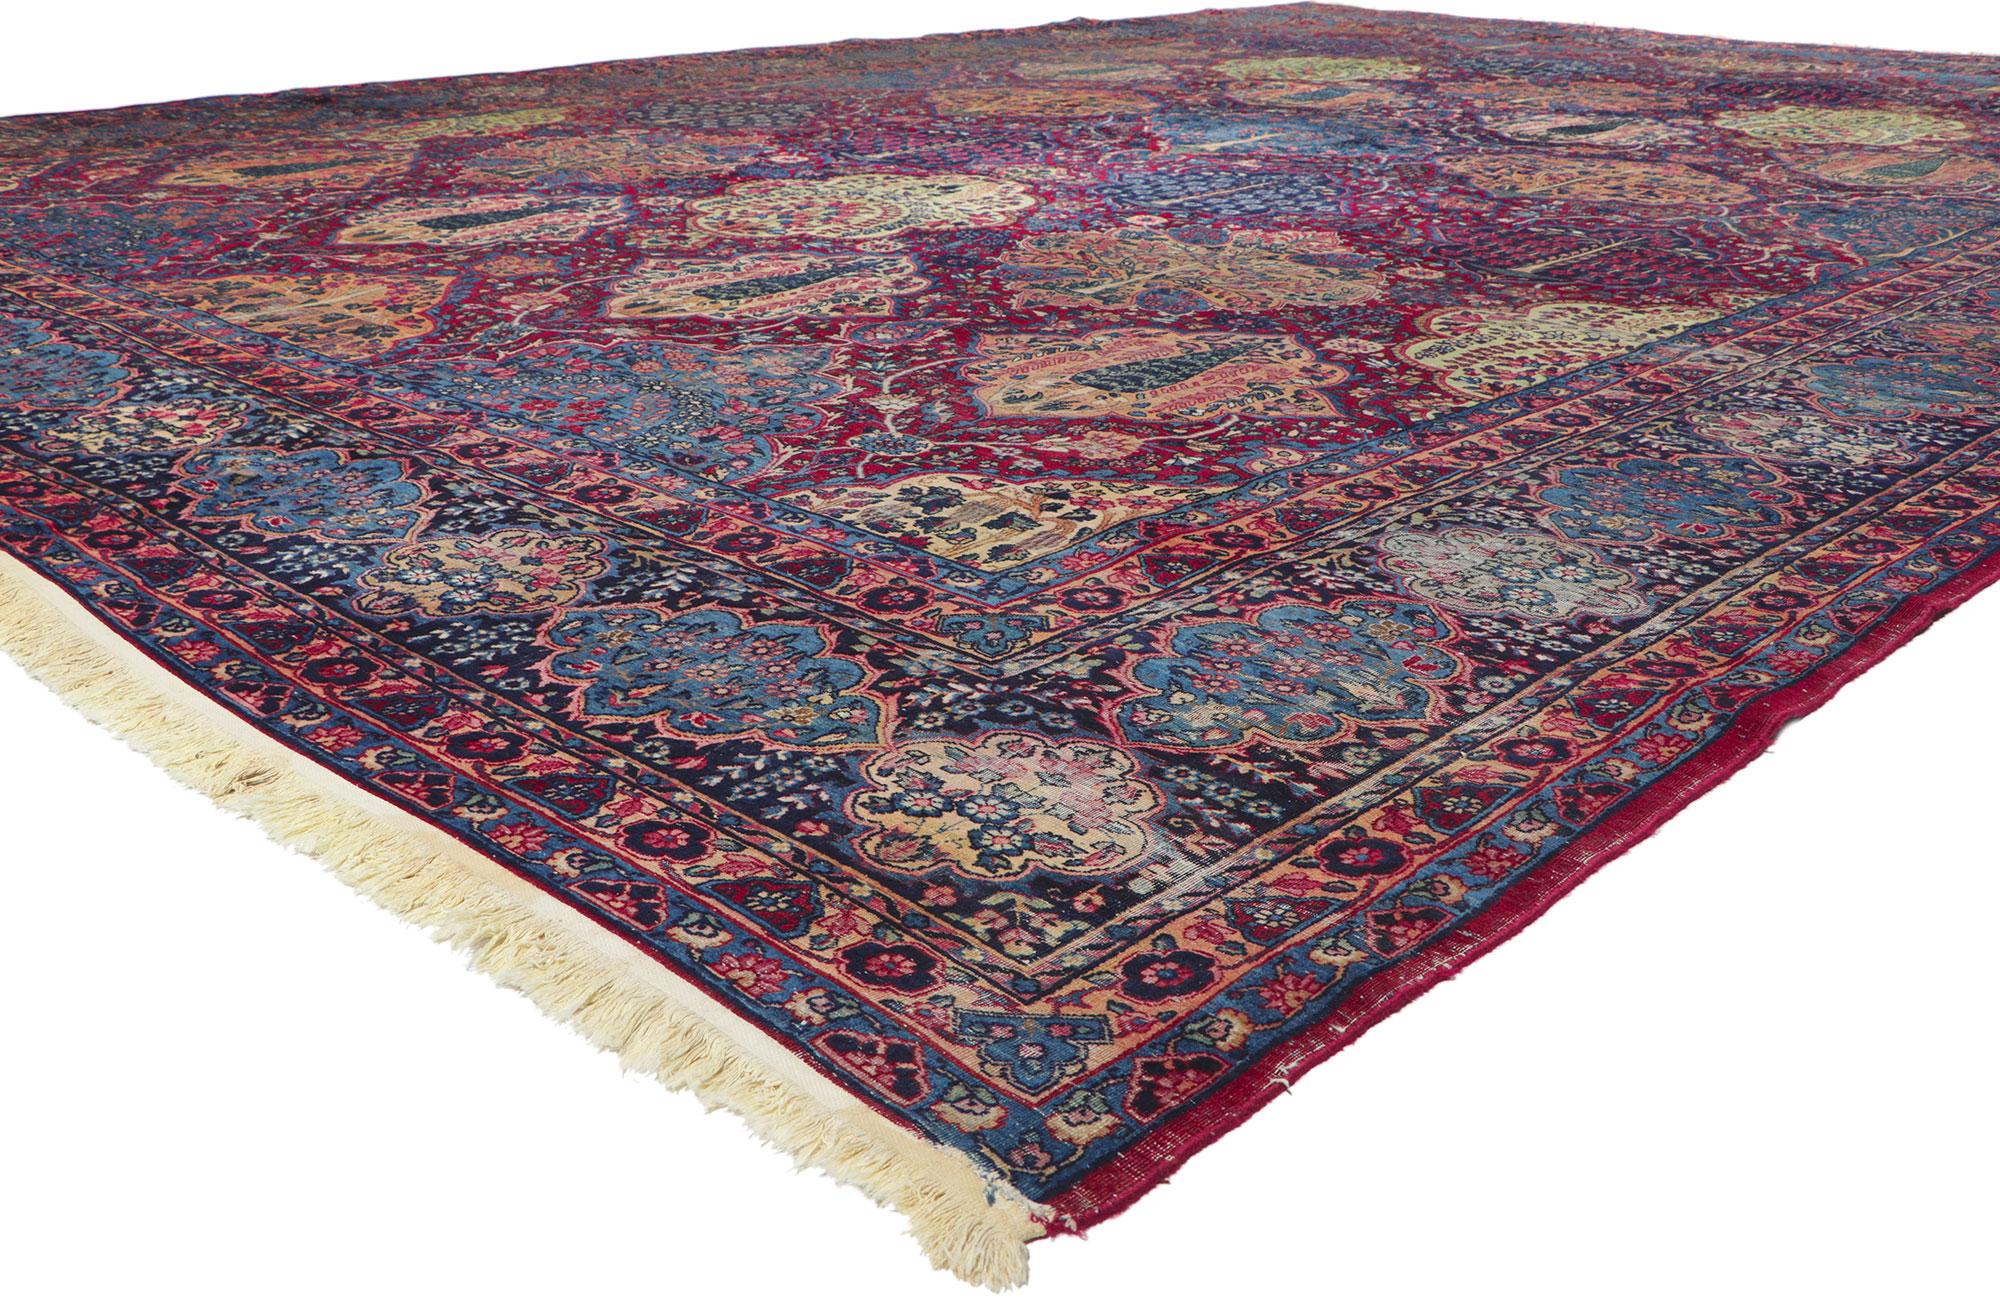 78356 Antique Persian Yazd Rug, 13'02 x 18'07. Avec son attrait intemporel, ses détails décoratifs ornés et sa beauté sans effort, ce tapis persan ancien Yazd en laine nouée à la main est prêt à impressionner. Le champ rouge-bordeaux profond est